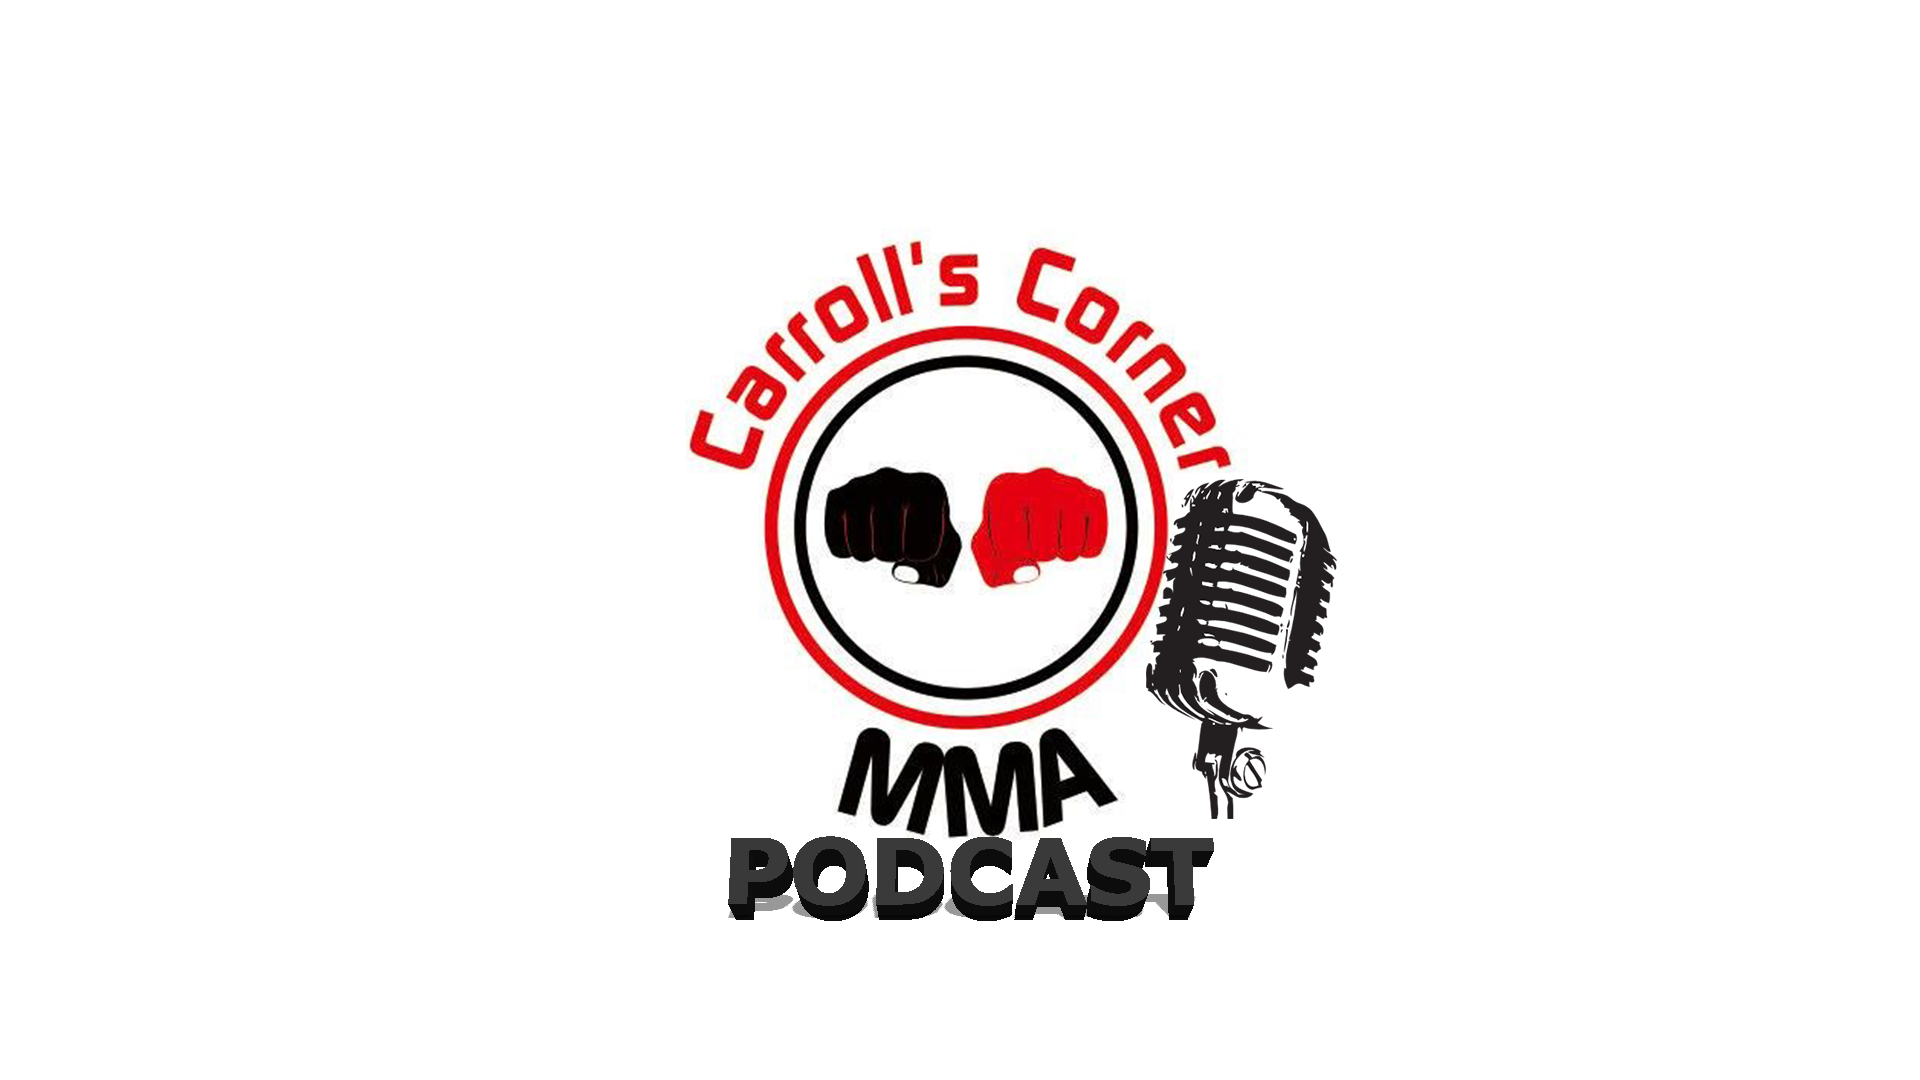 Carroll's Corner MMA Podcast Episodes